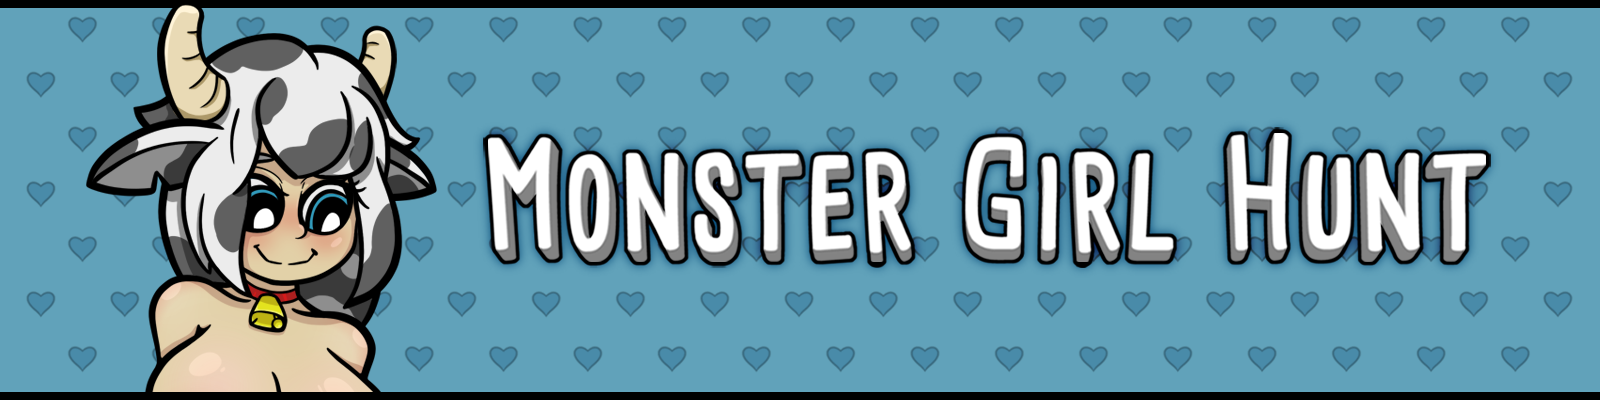 Monster Girl Hunt - 0.2.96